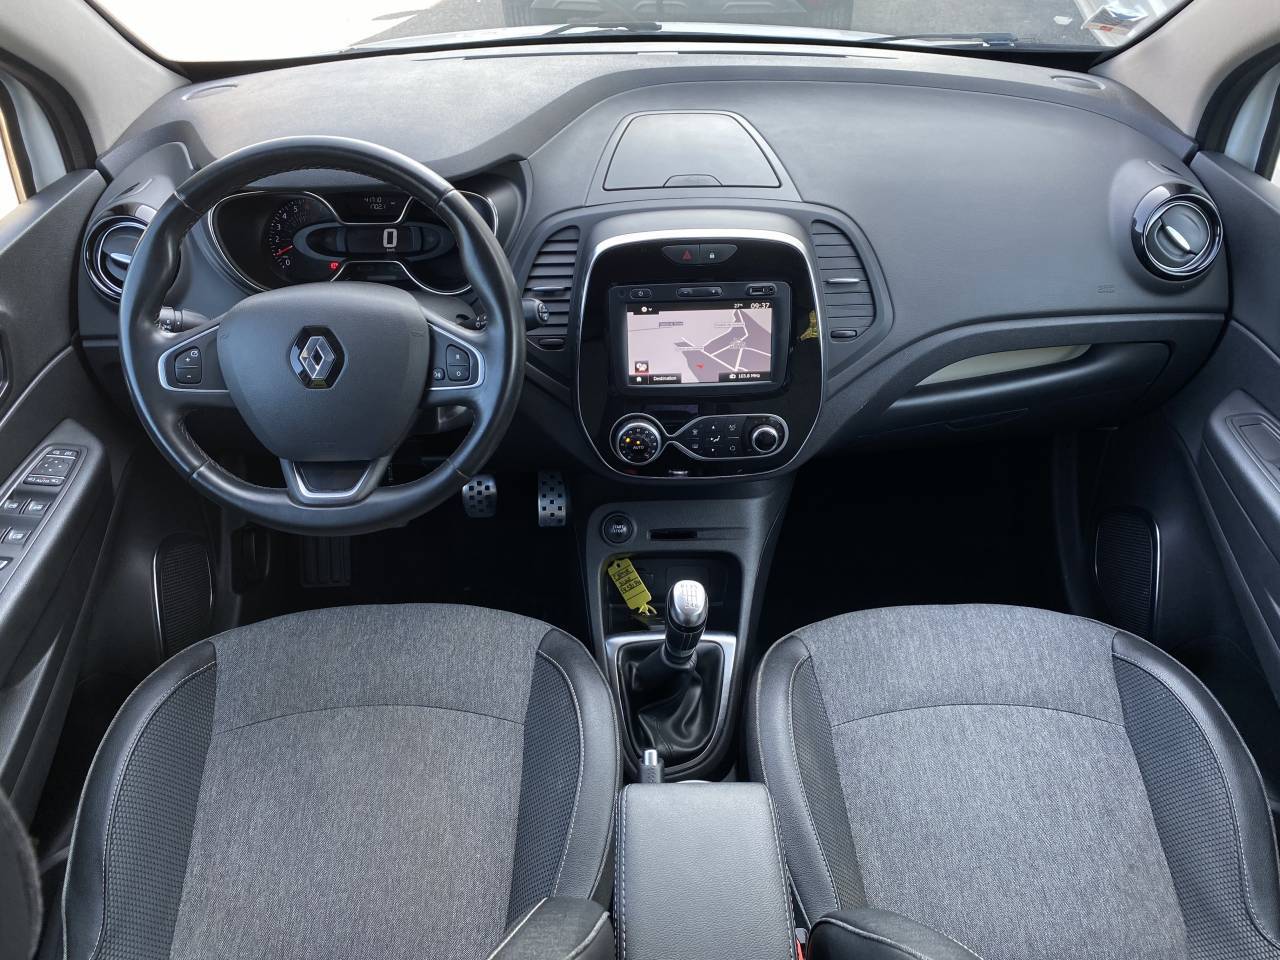 Renault Captur Intens TCe 130 FAP groupe Vergnon